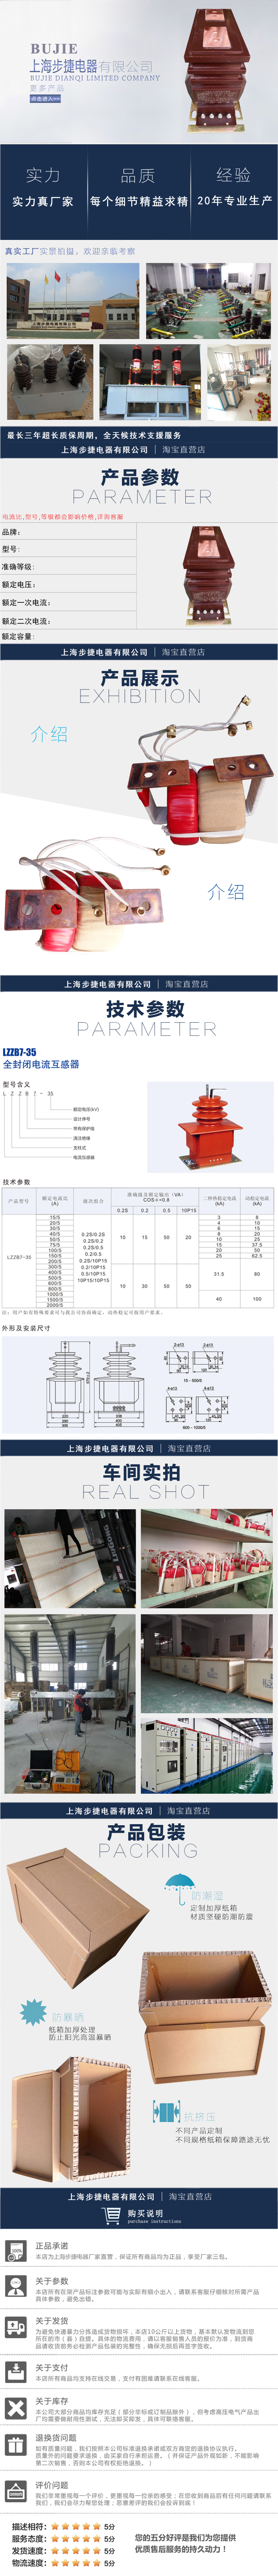 步捷电器 JDZX10-10 电压互感器JDZX10-10 JDZX10-10,RZL-10,REL-10,JDZ10-10,电压互感器